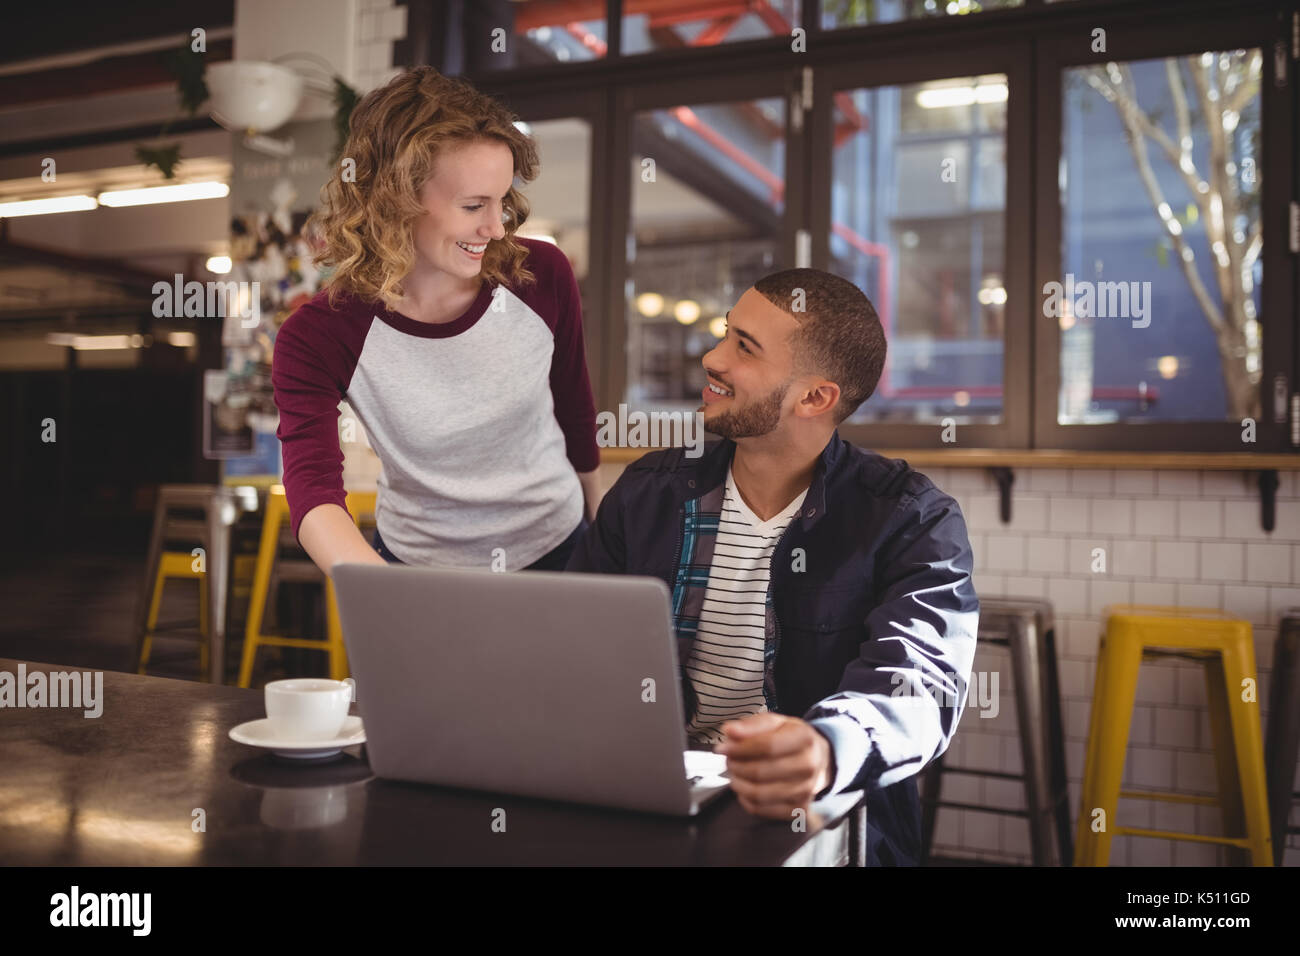 Lächelnde junge Frau und Mann im Coffee Shop Stockfoto